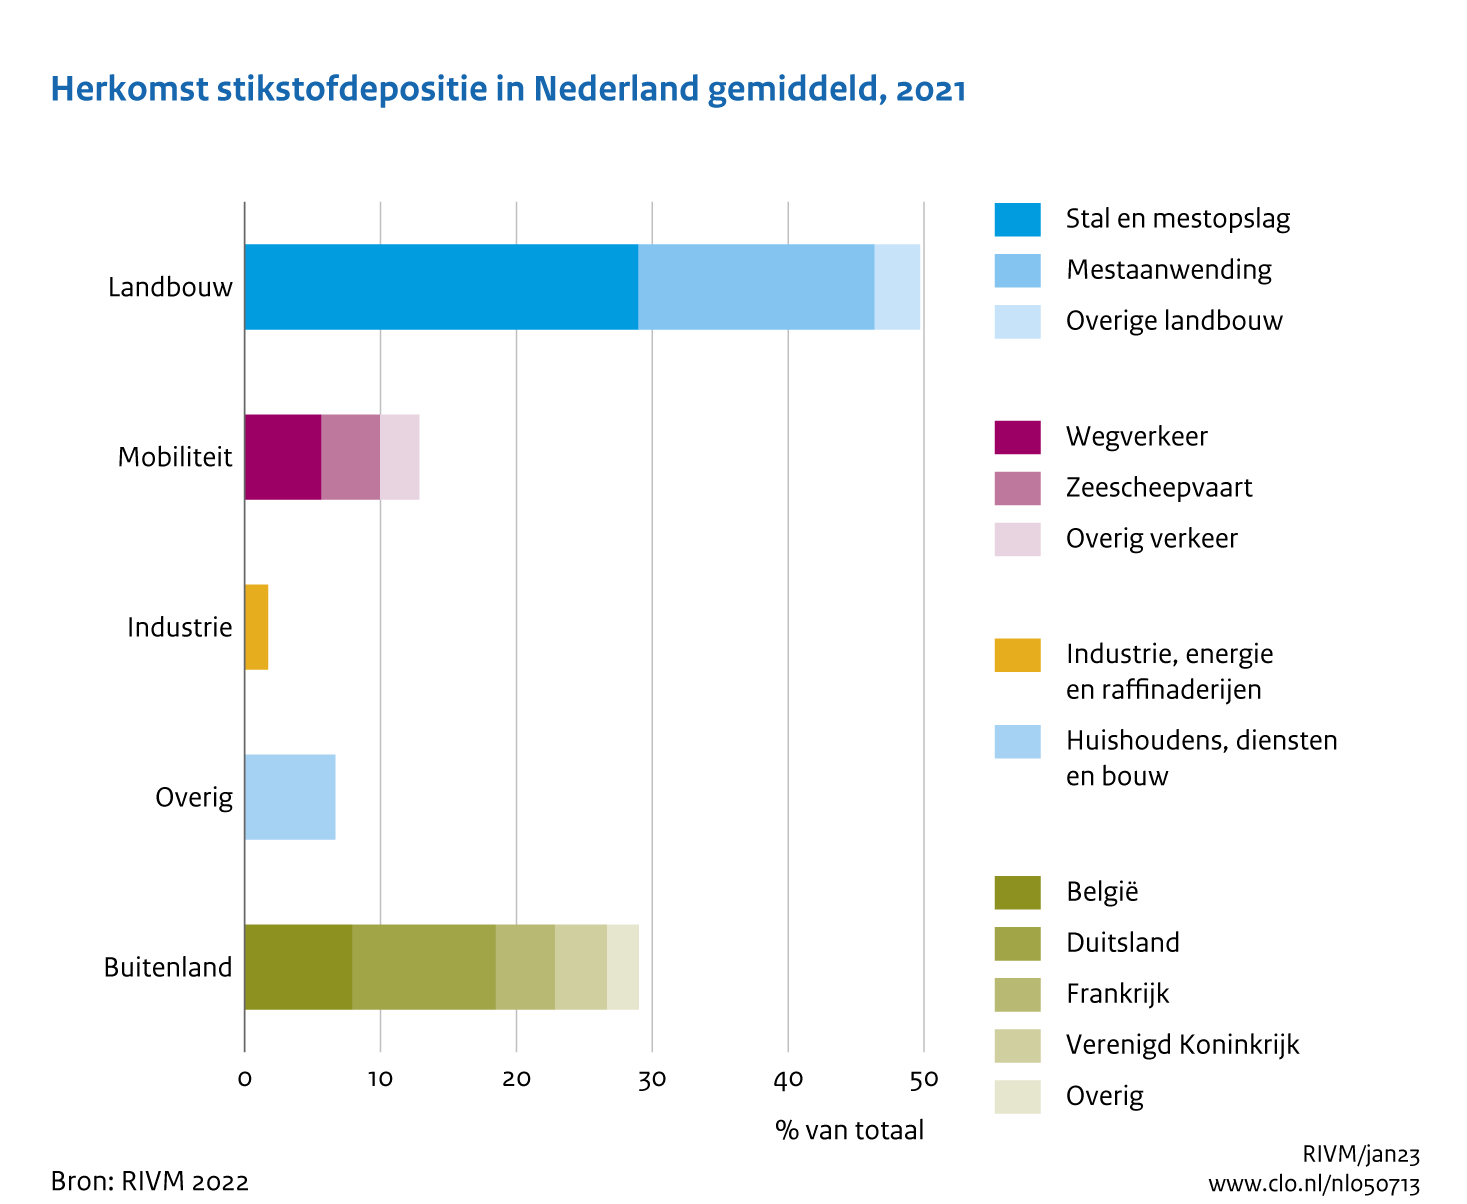 Figuur Herkomst van de gemiddelde stikstofdepositie in Nederland in 2021. In de rest van de tekst wordt deze figuur uitgebreider uitgelegd.